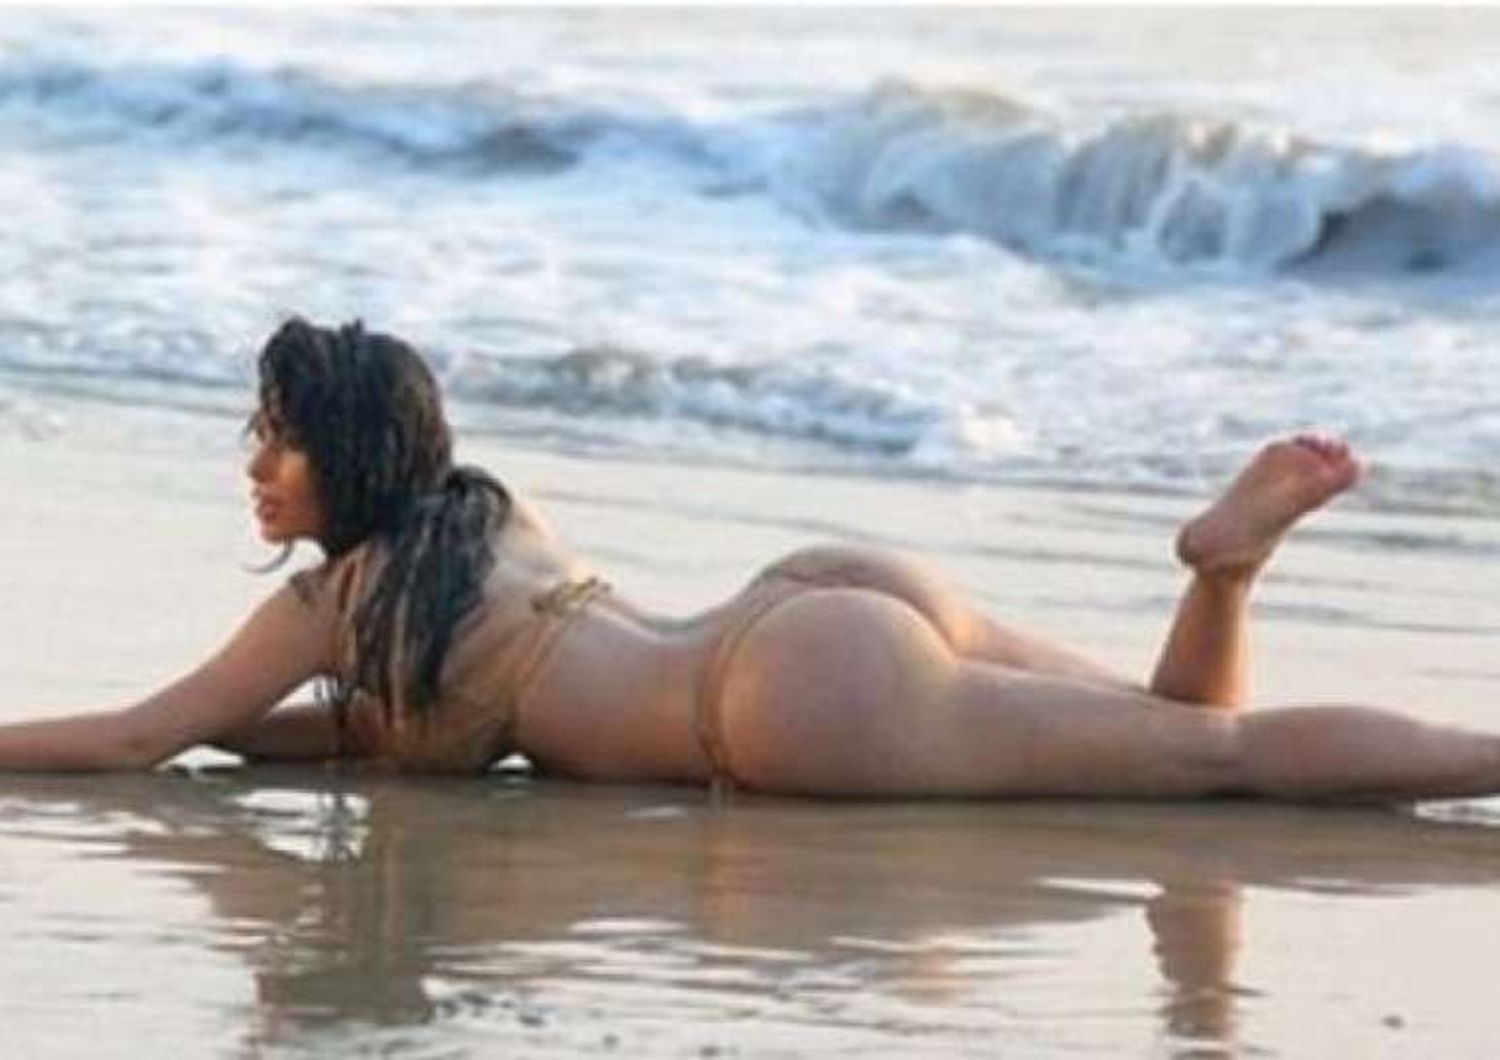 Vip: porno-hacker, in rete le foto rubate di Kim Kardashian nuda